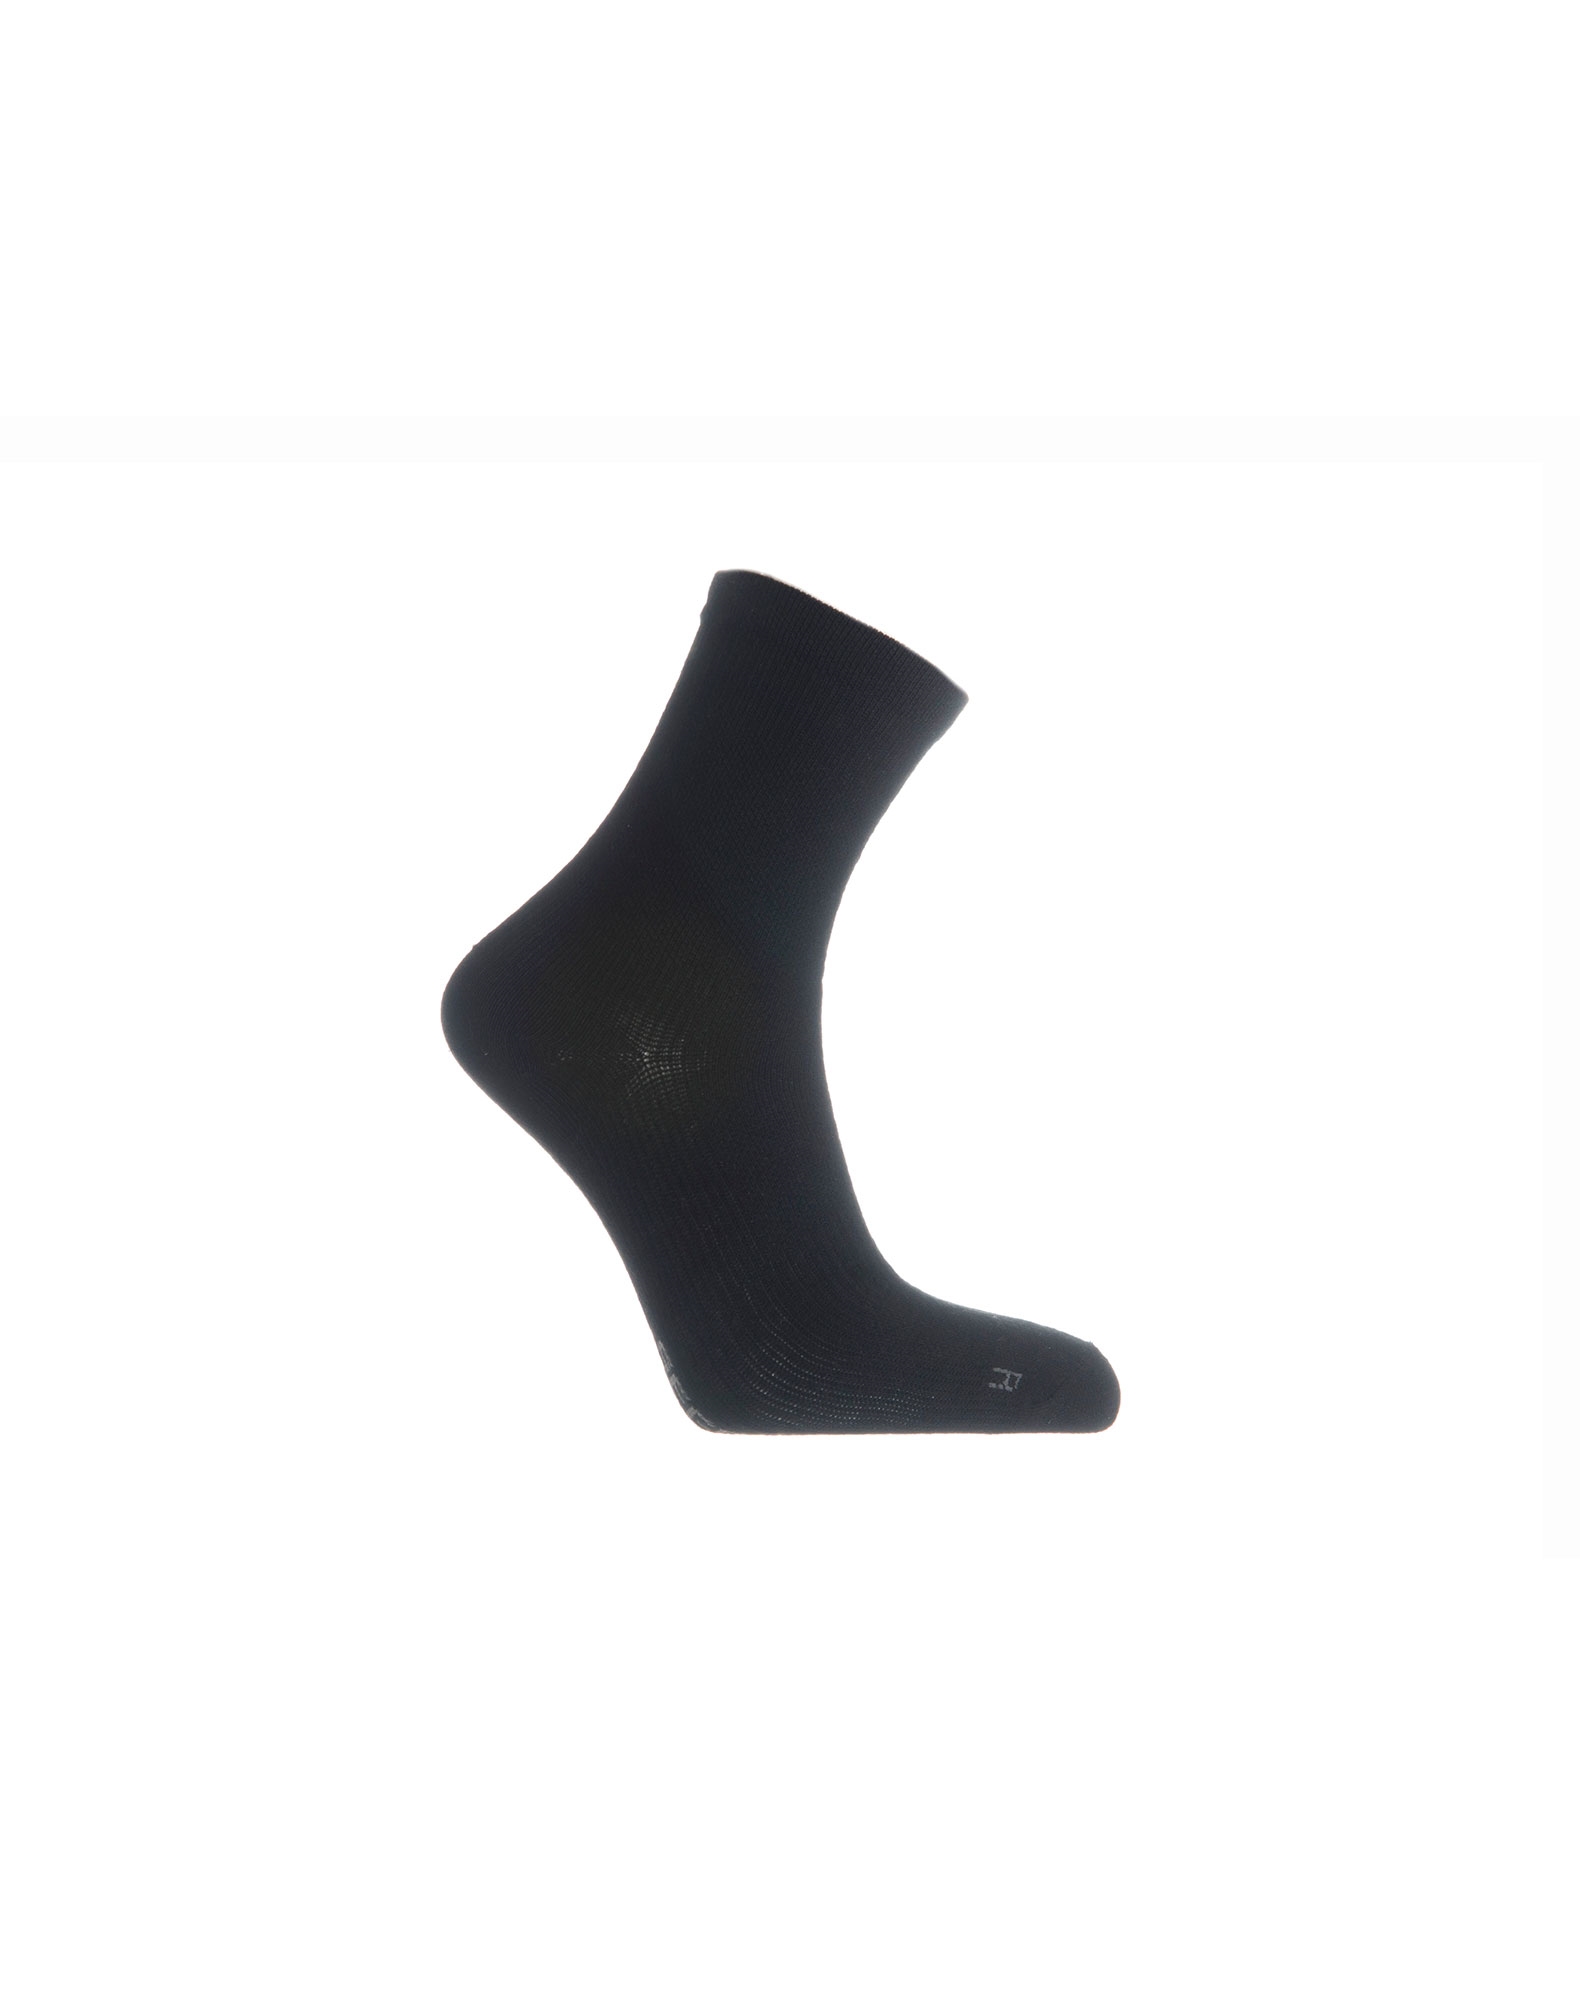 Seger Coolmax Basic sokker til unisex i sort